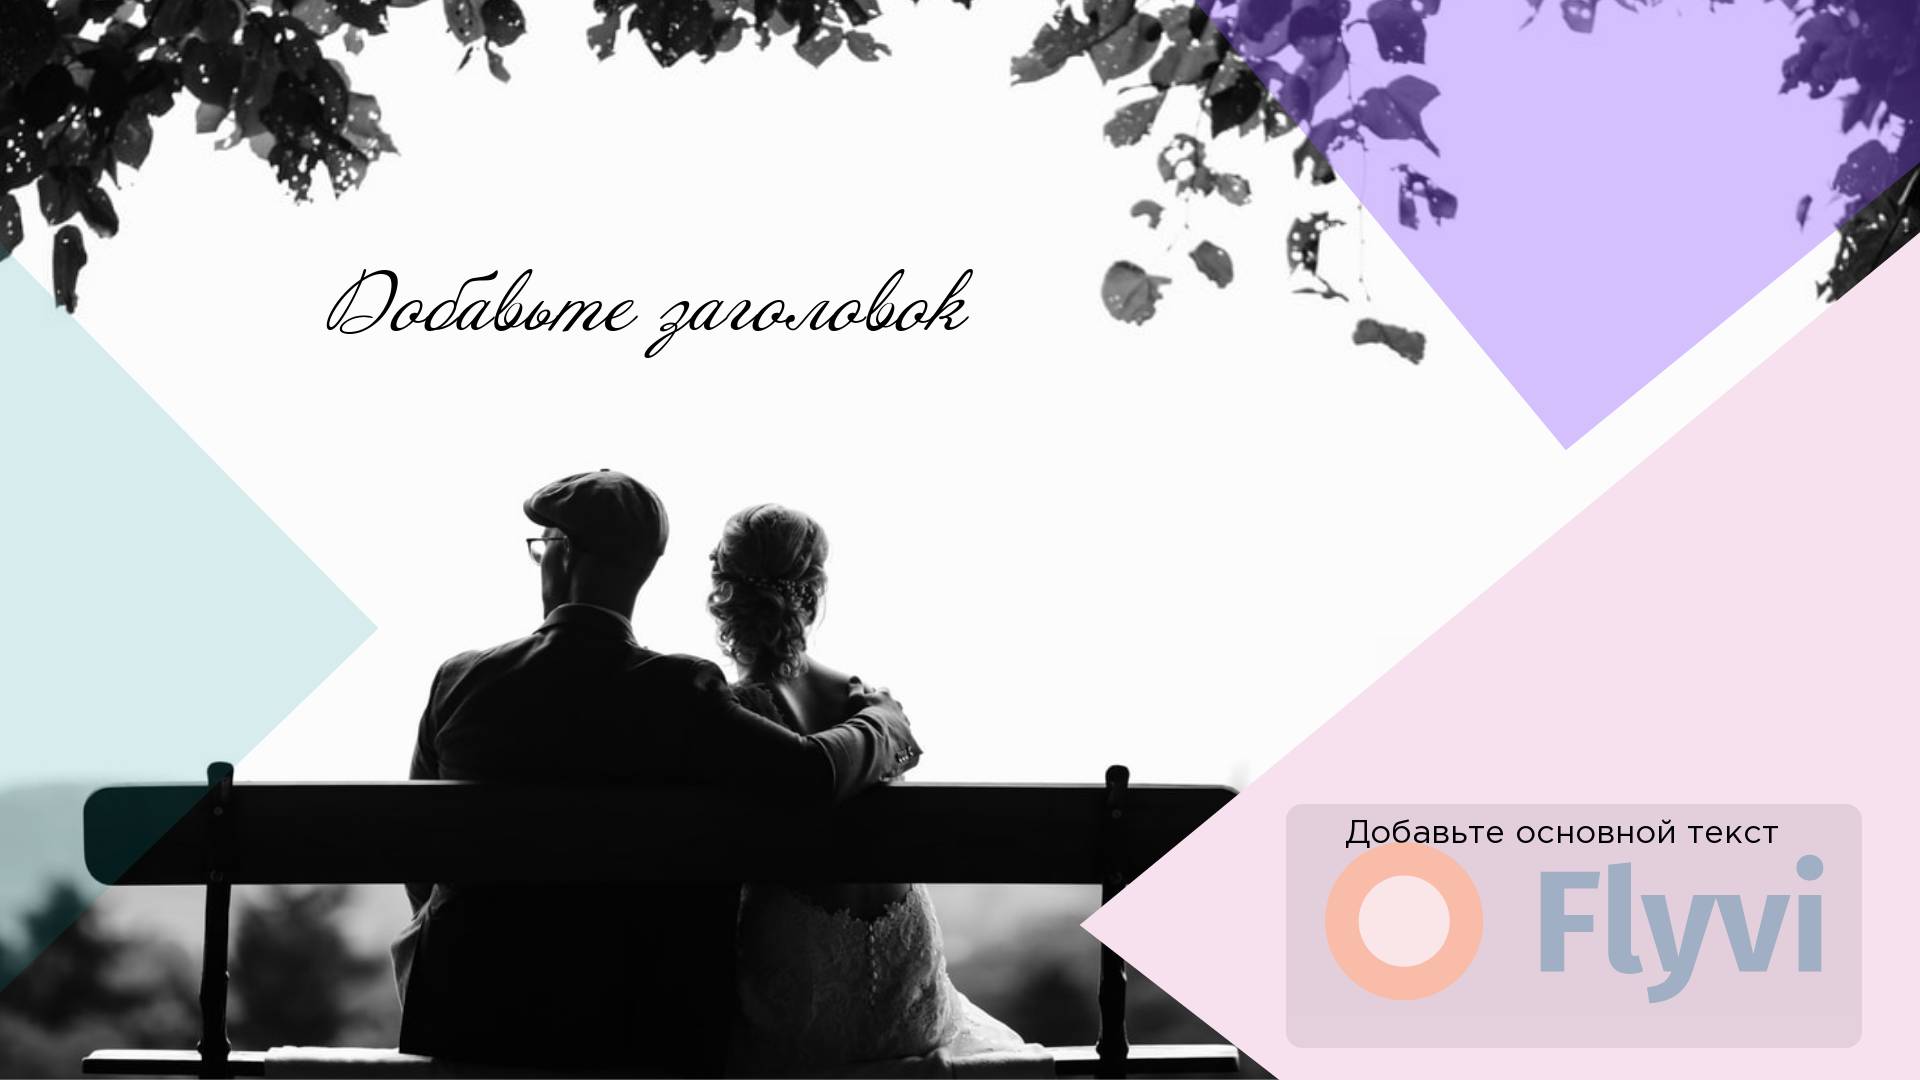 Романтический пост для соцсетей с парой сидящей на скамье в парке под листьями деревьев